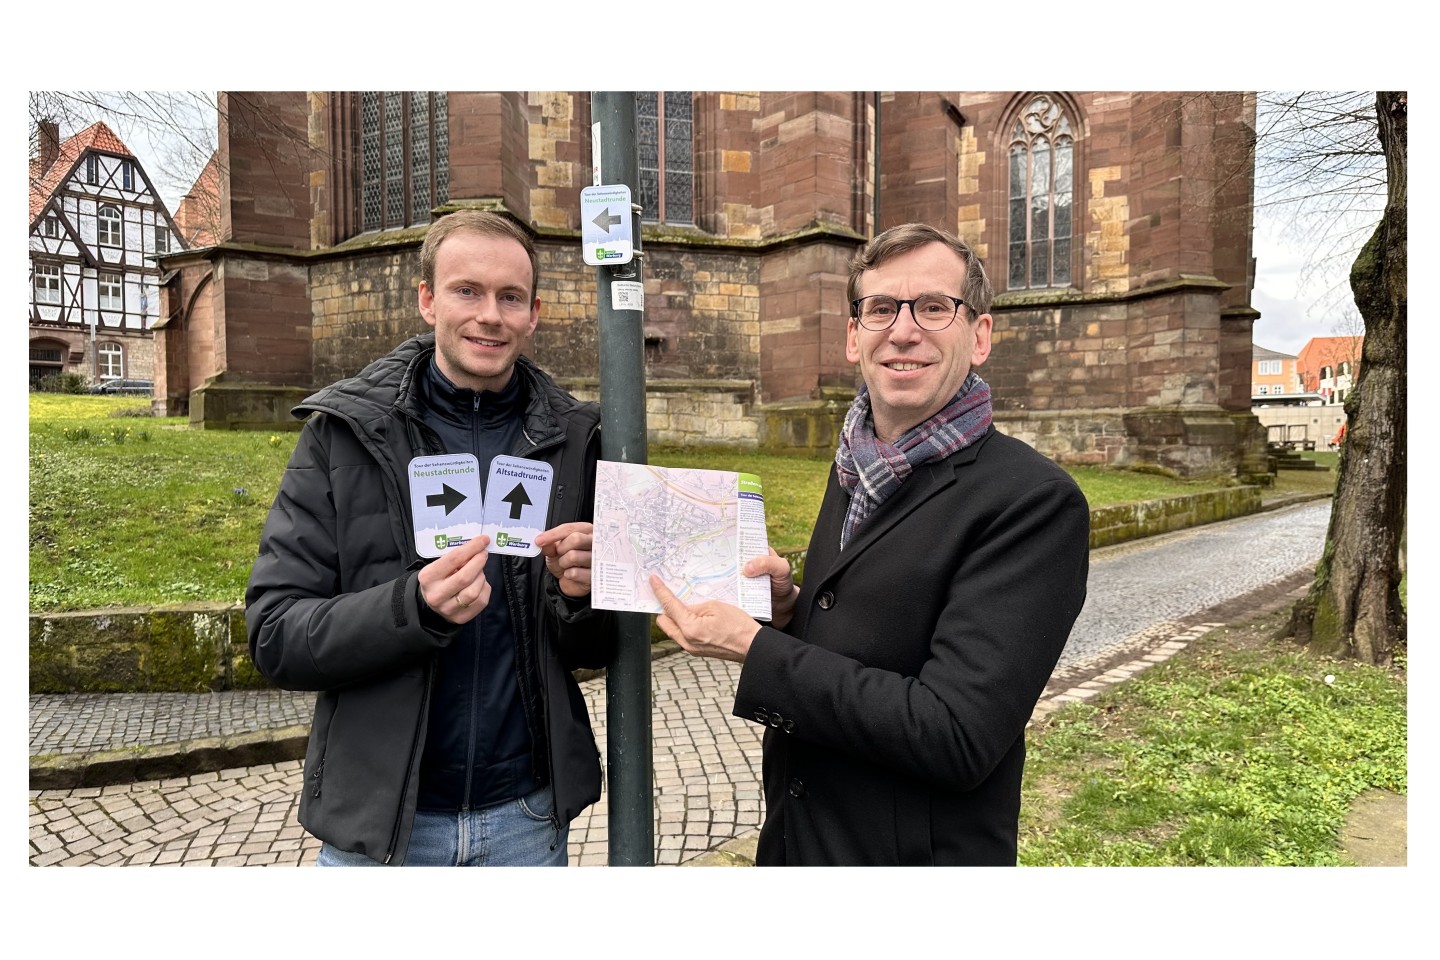 Bildunterzeile: Touristiker Lucas Lambracht (von links) und Bürgermeister Tobias Scherf präsentieren die neuen Wege-Markierung und den überarbeiteten Flyer der Tour der Sehenswürdigkeiten an der Neust